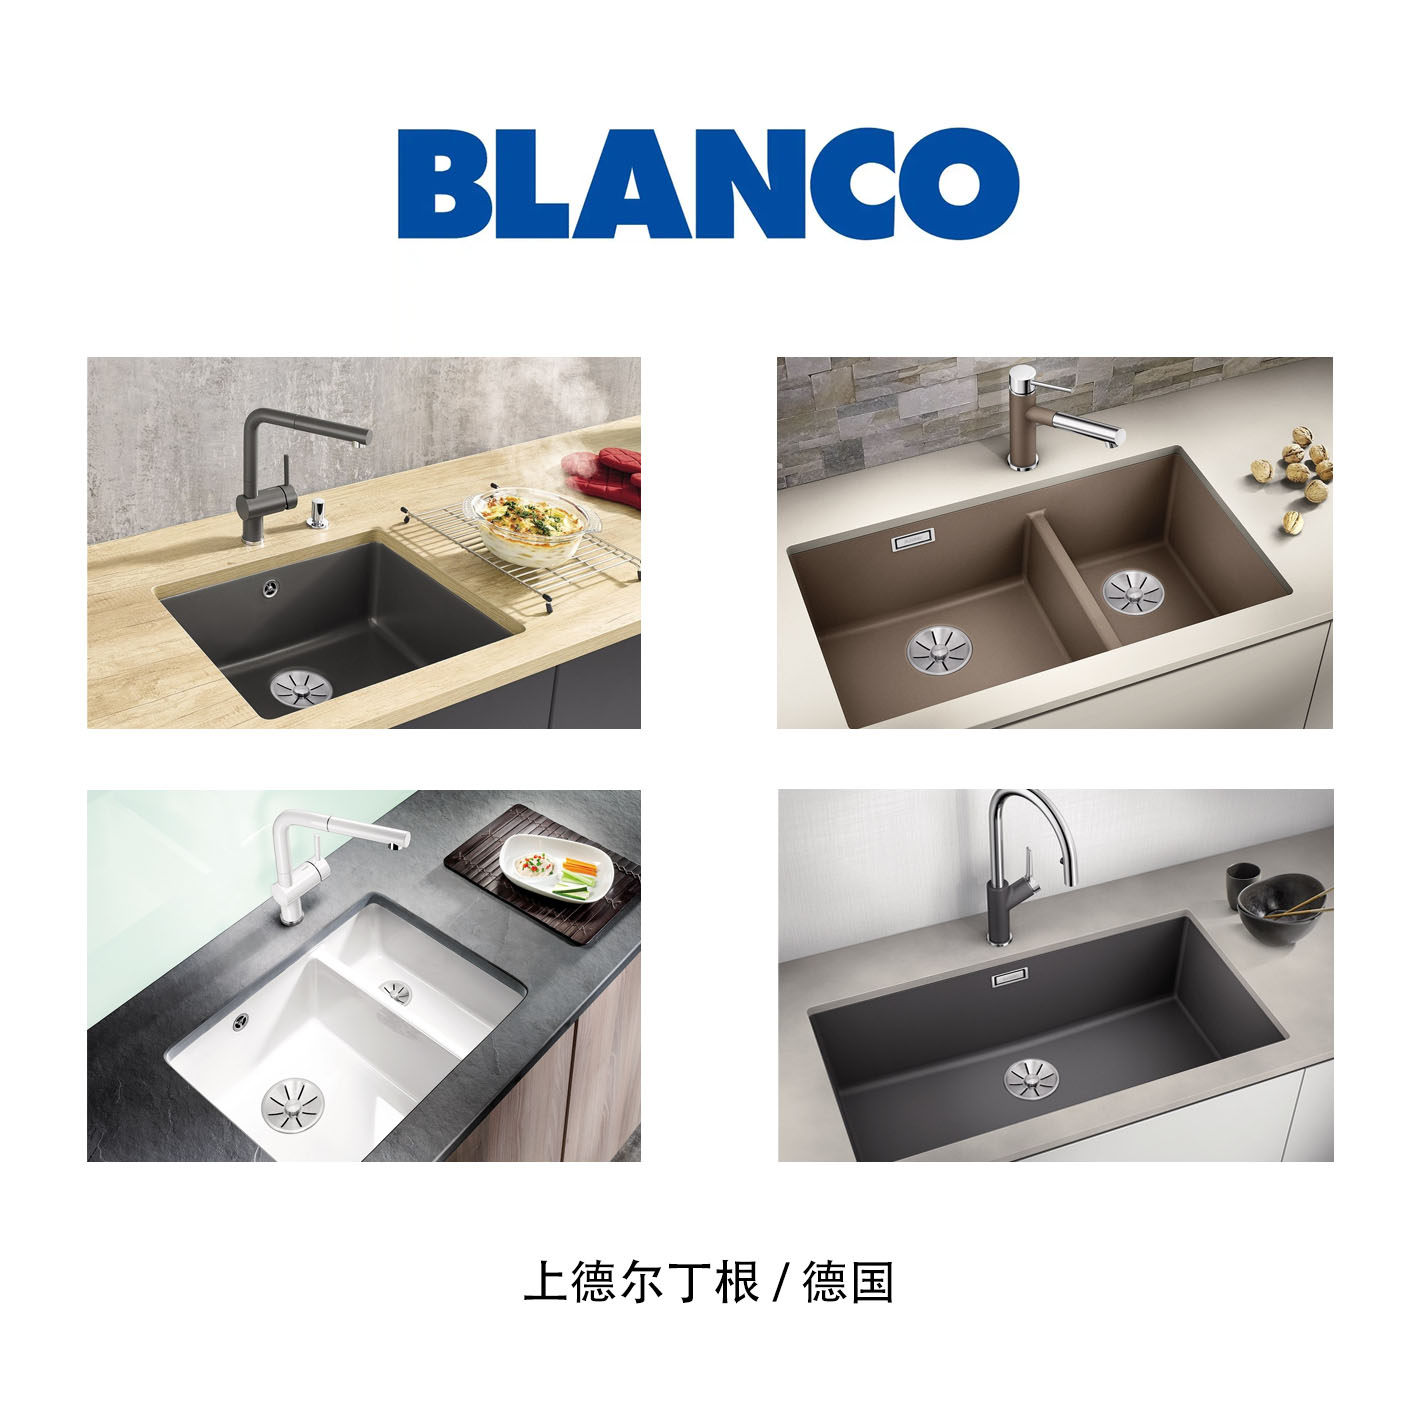 Blanco 厨房卫浴